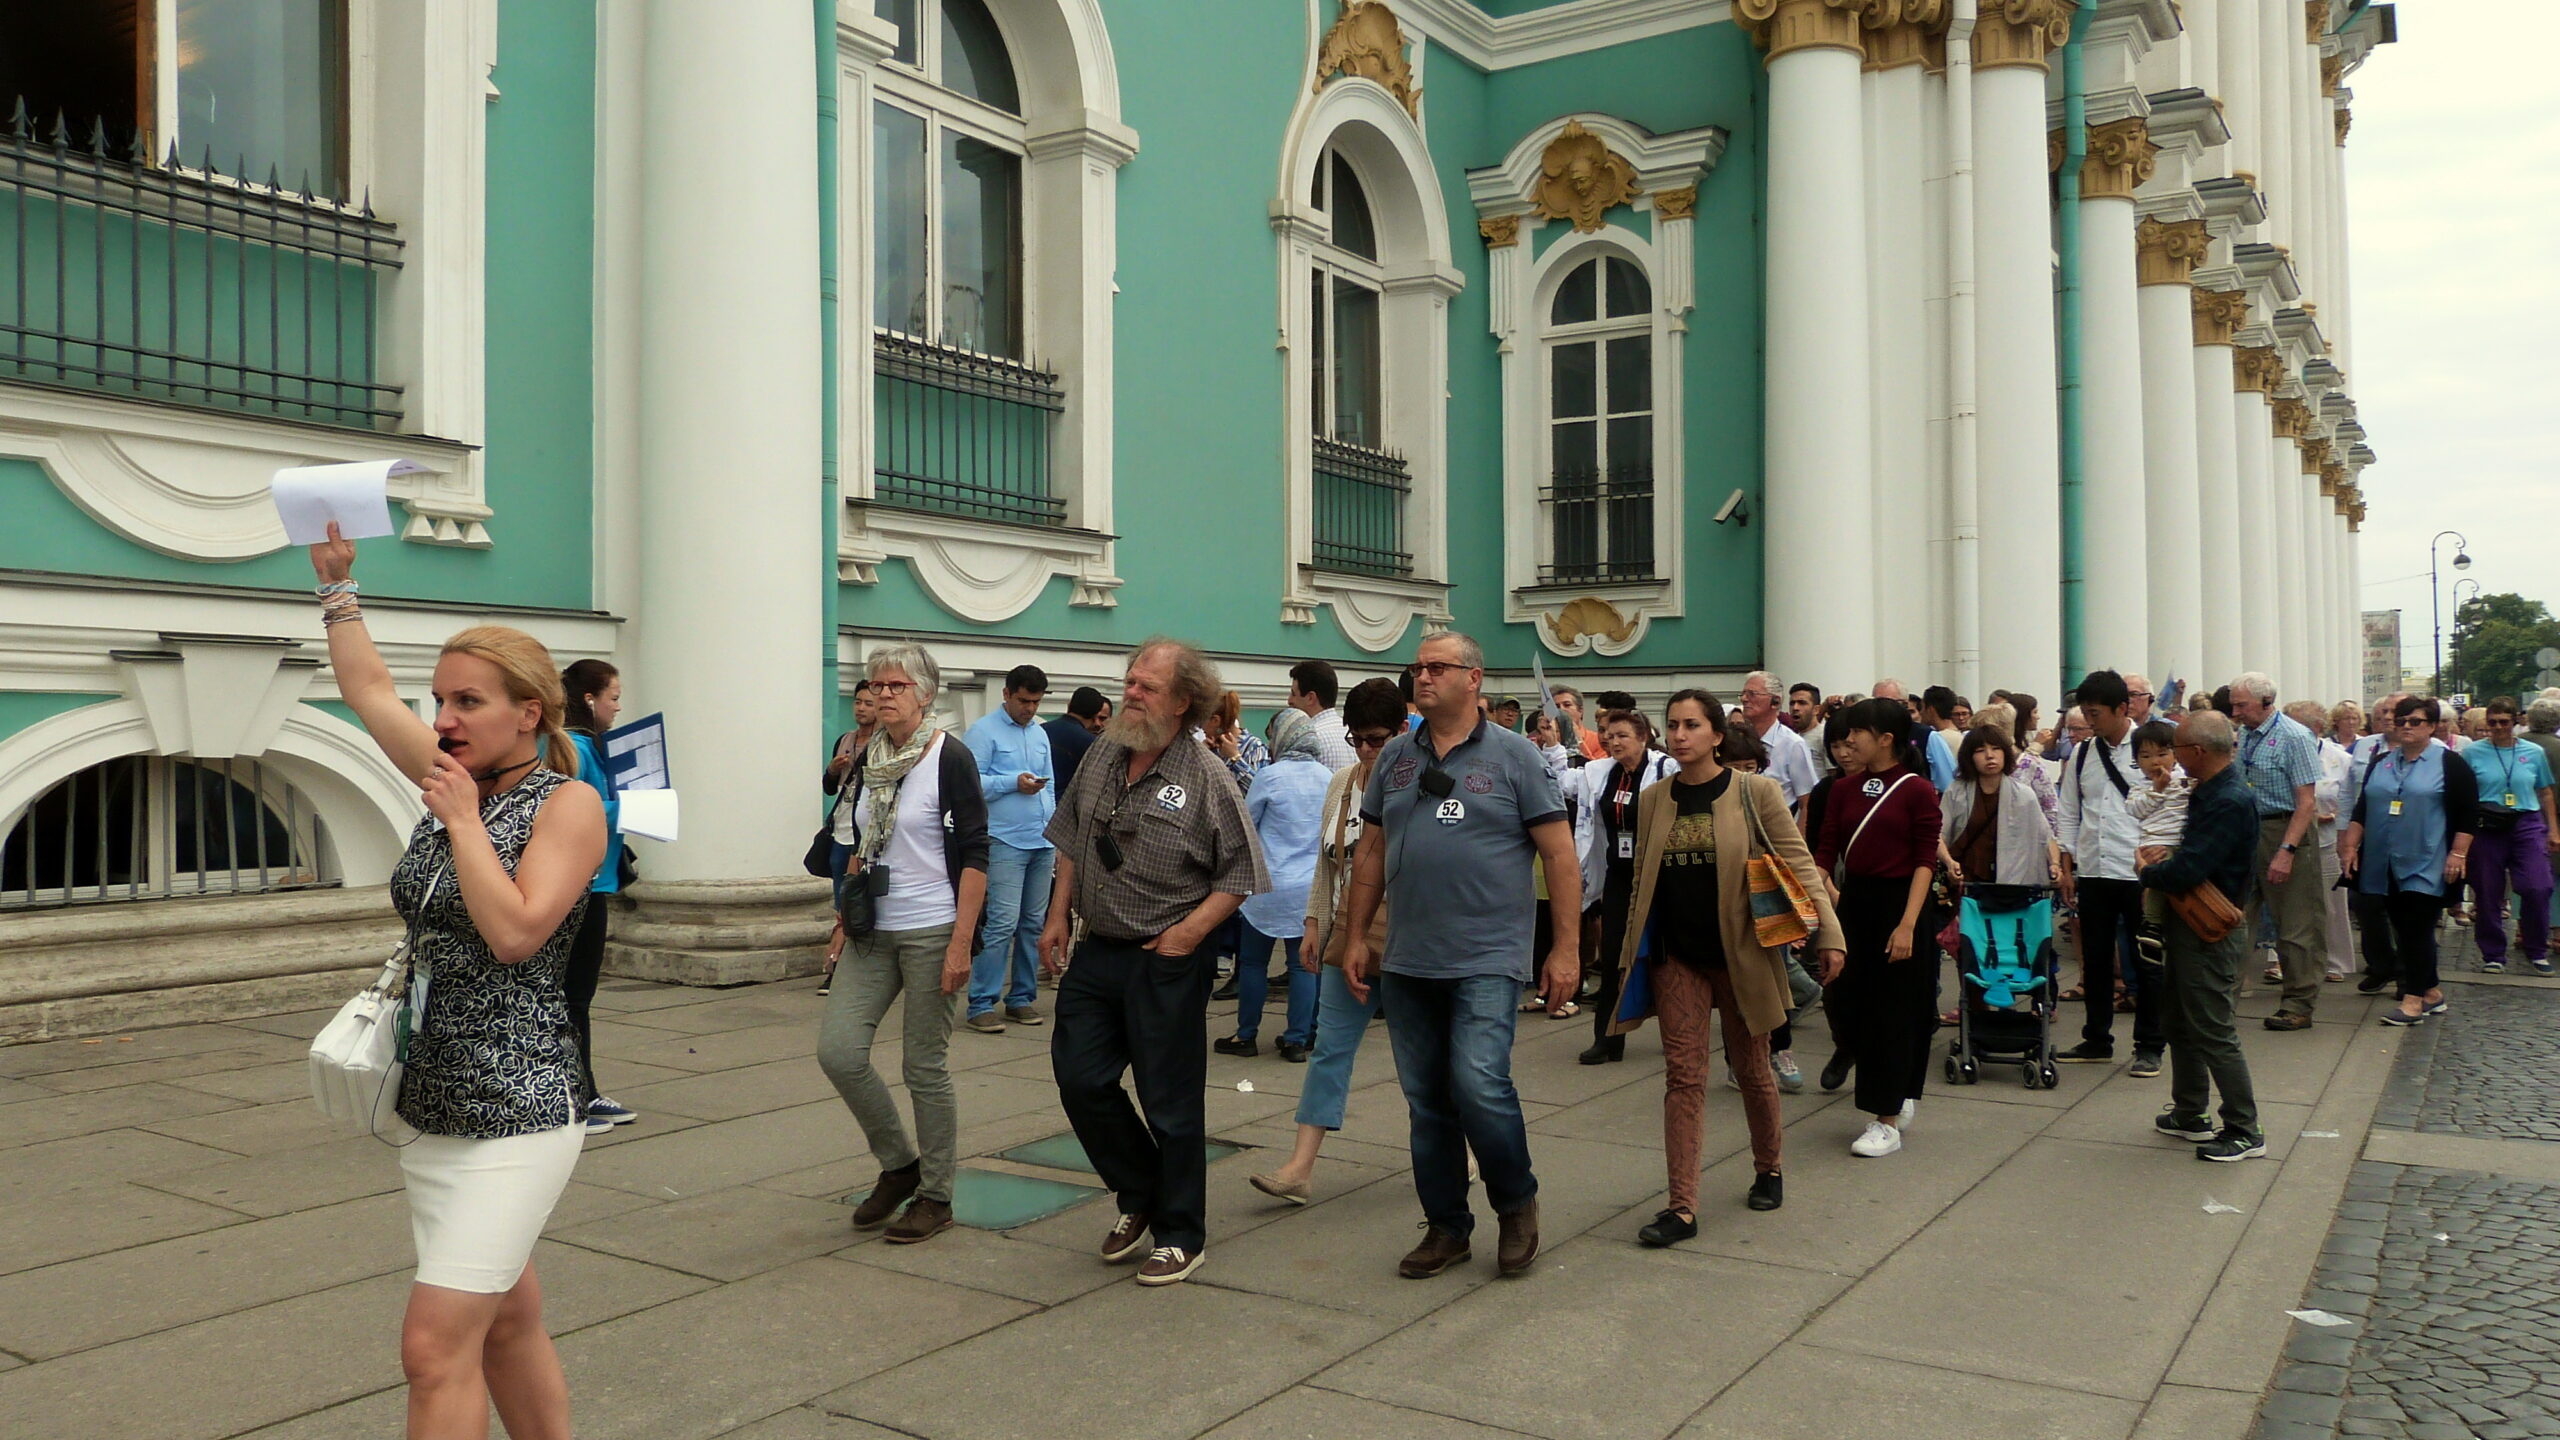 Петербург обогатился на 145 млрд рублей за счет туристов с начала года